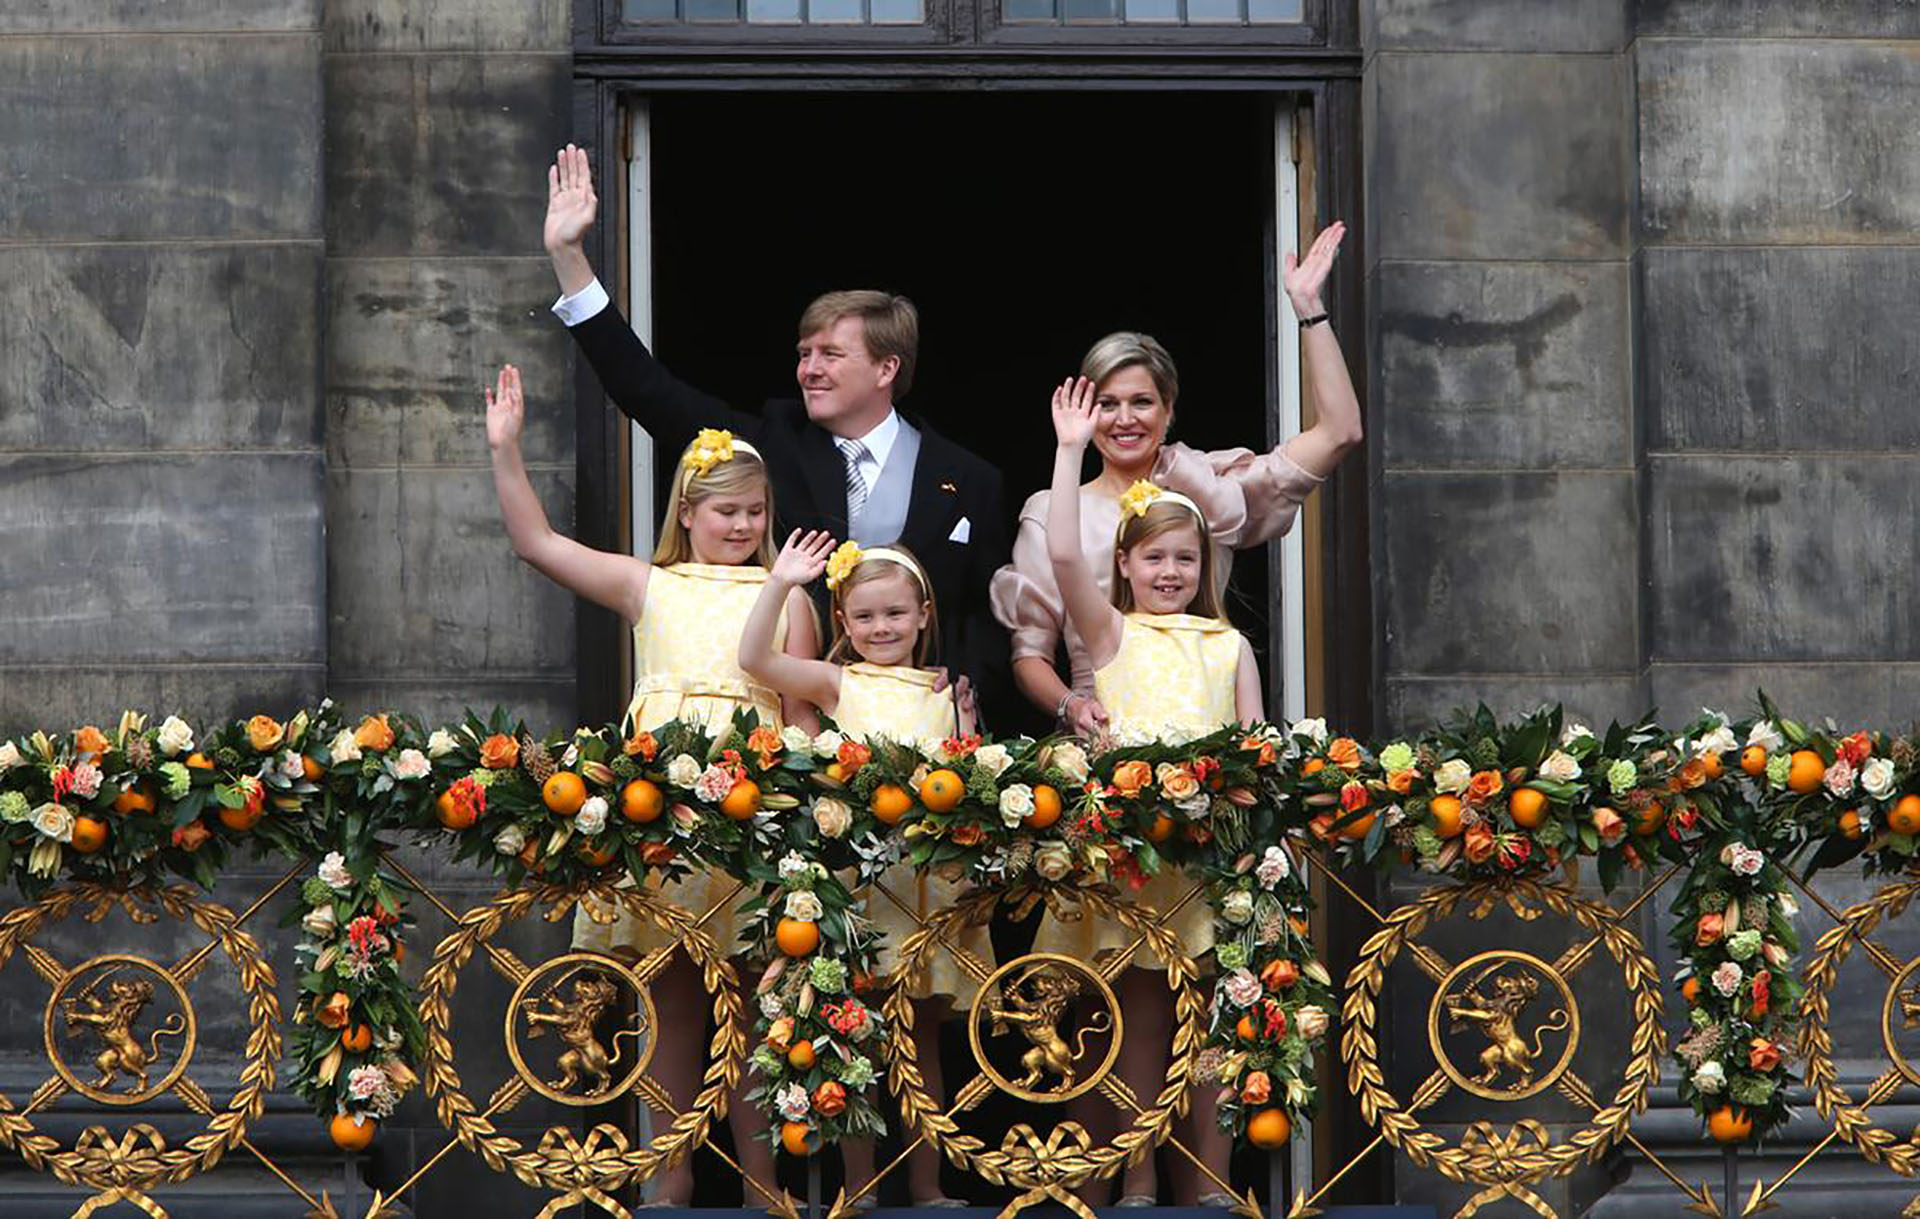 Máxima y Guillermo junto con sus tres hijas, las princesas Amalia, Alexia y Ariane, saludando a los holandeses en el balcón del Palacio Real 